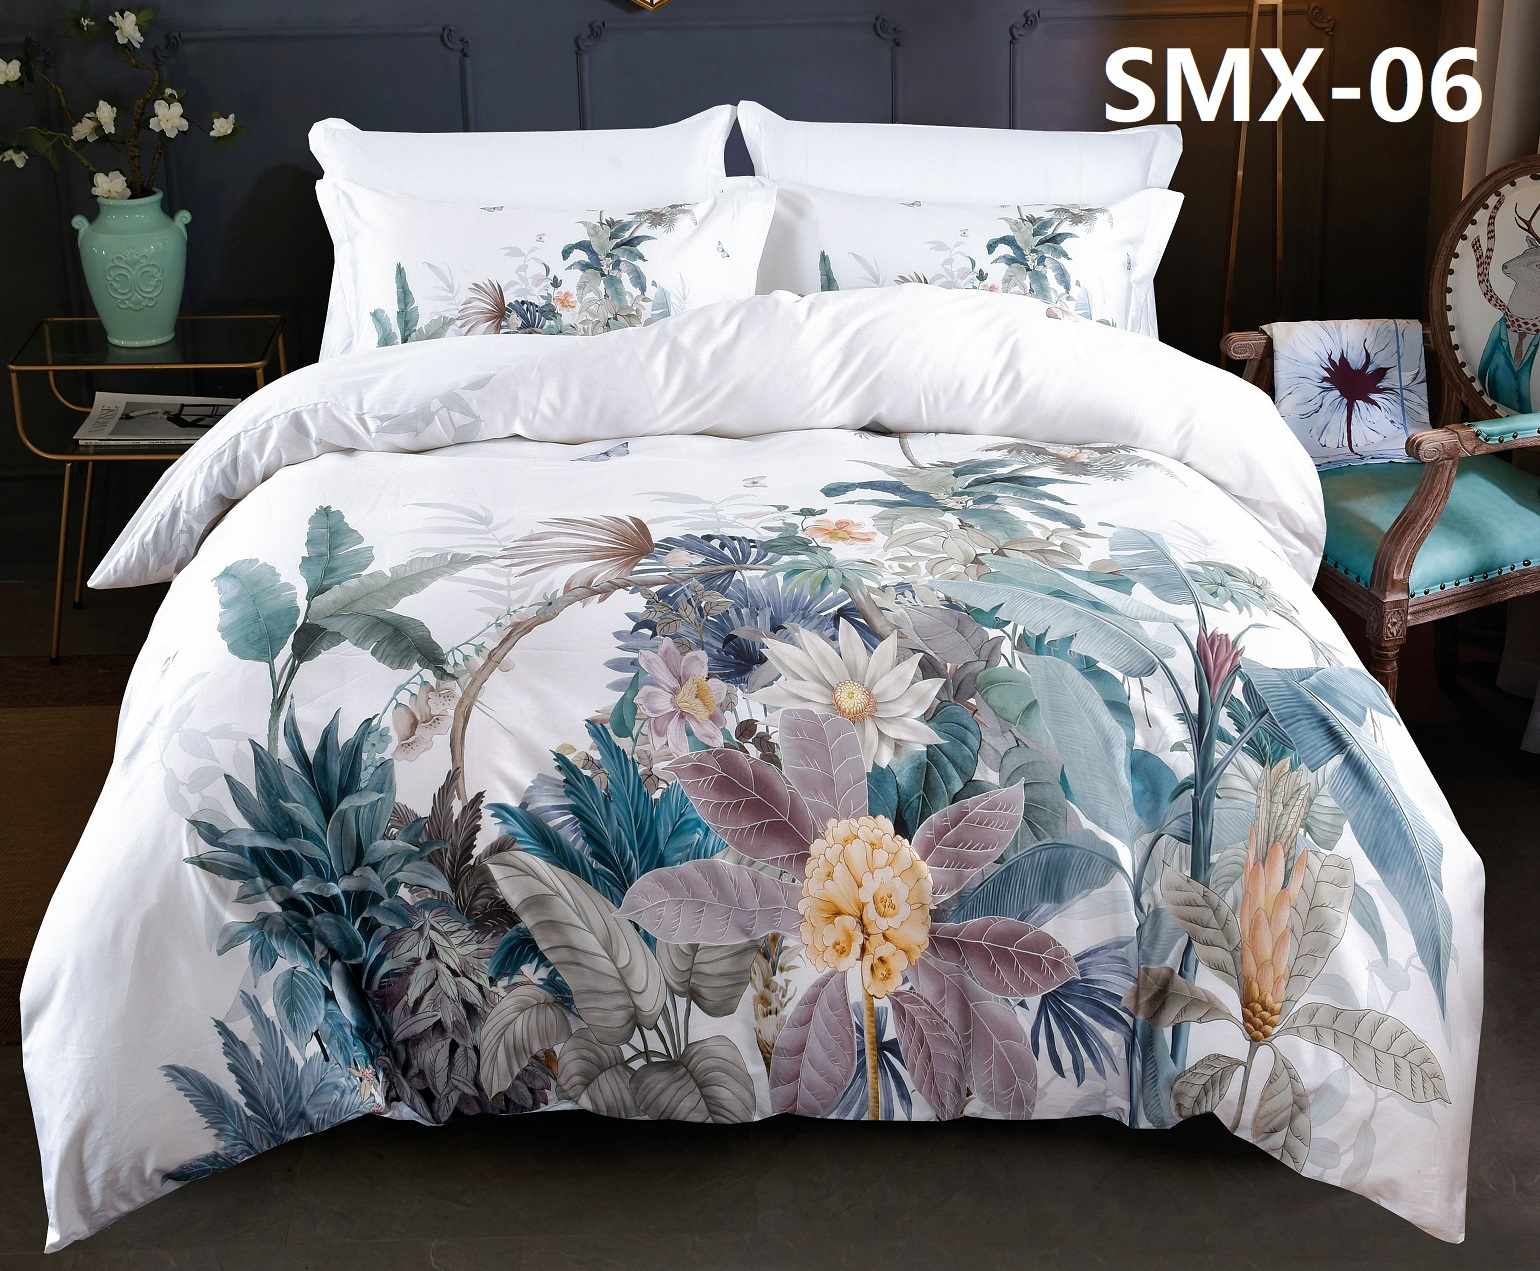 Комплект постельного белья SMX-06